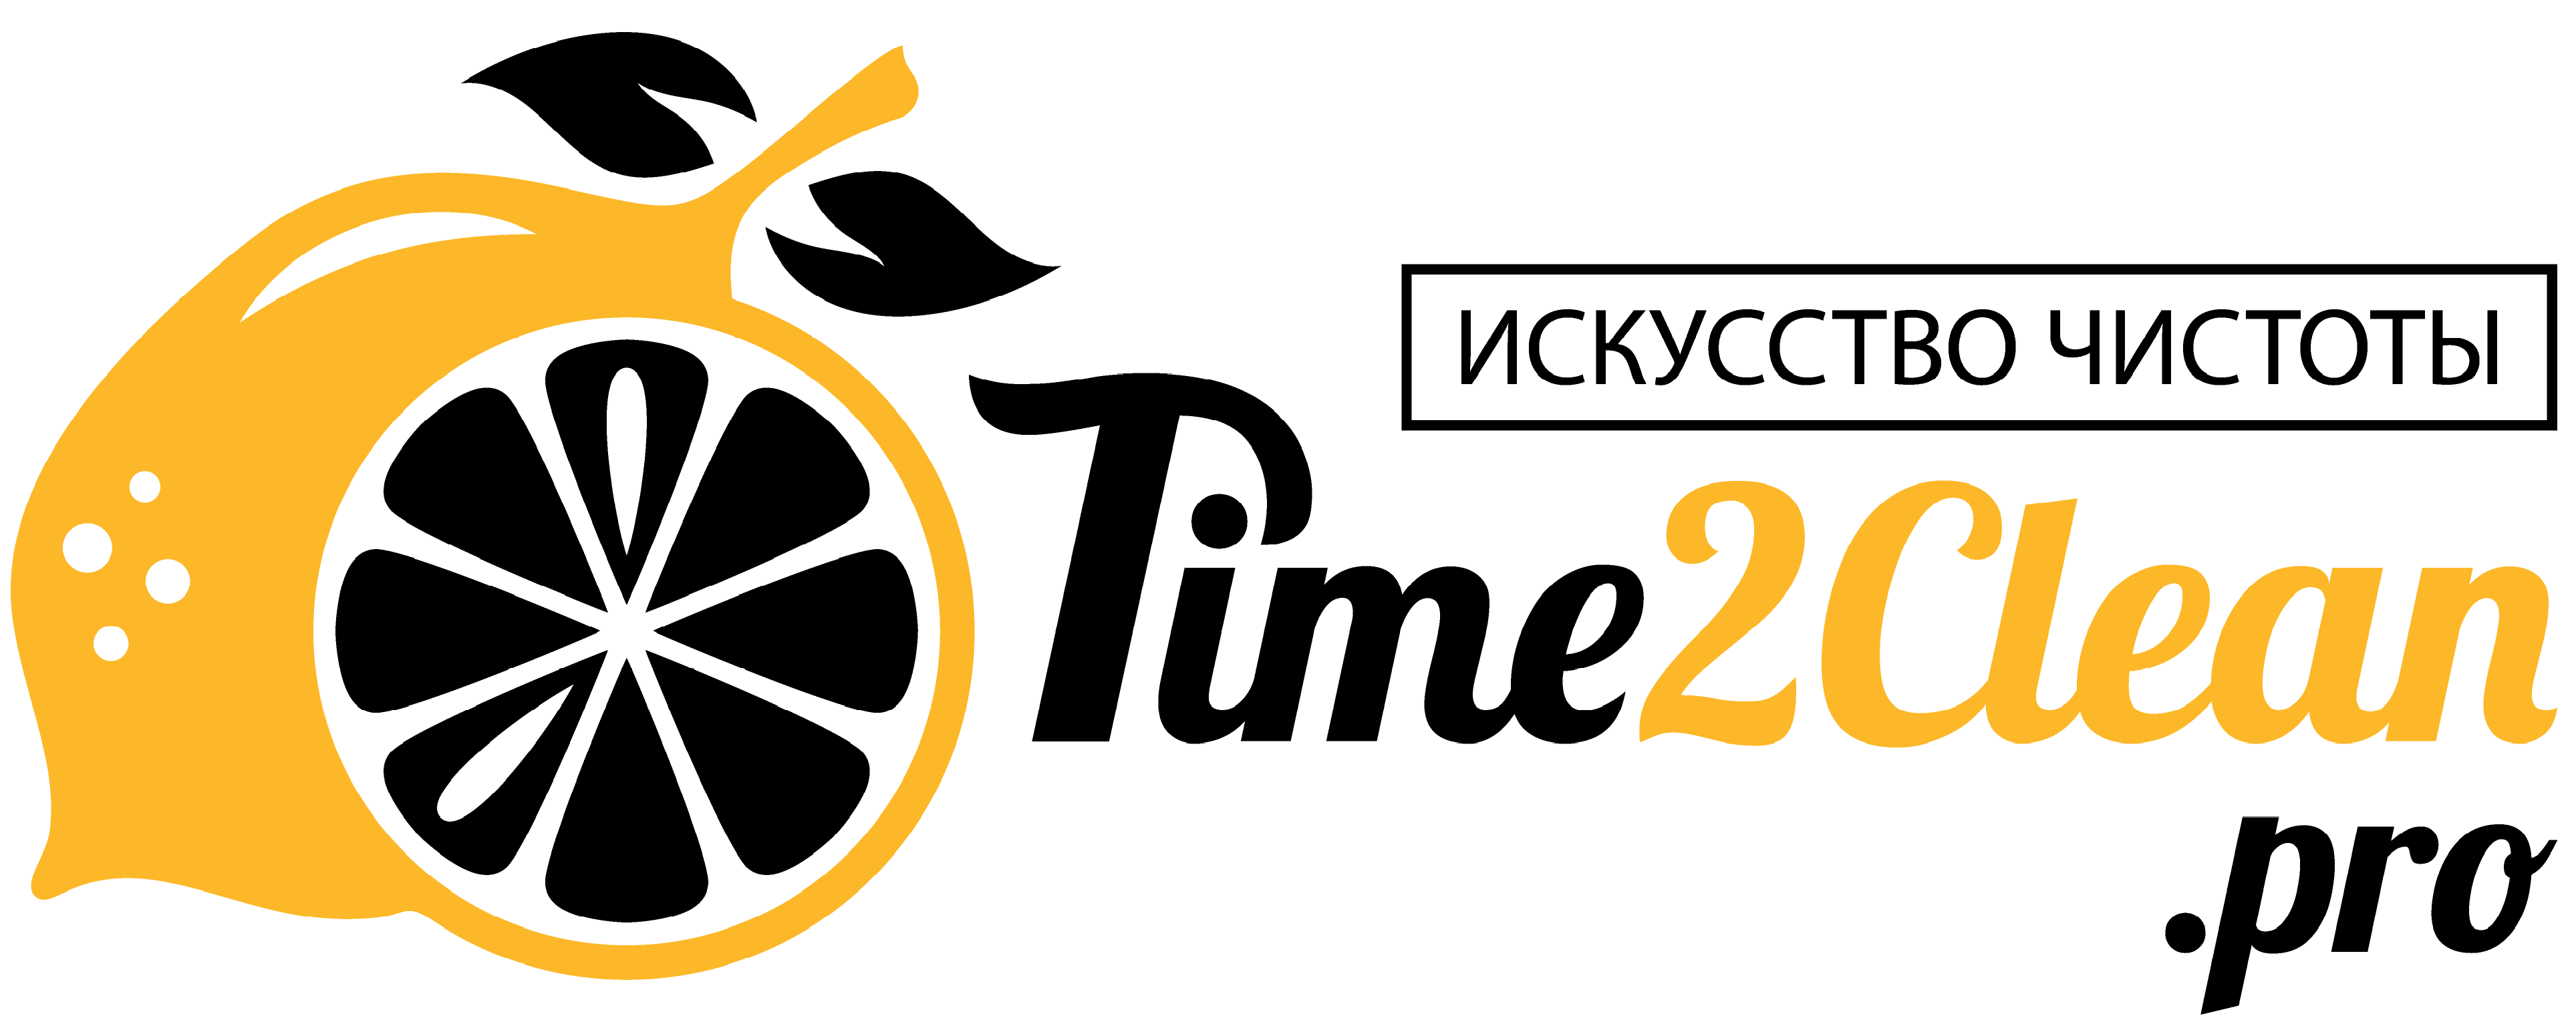 Time2Clean Pro. Послестроительный профессиональный клининг